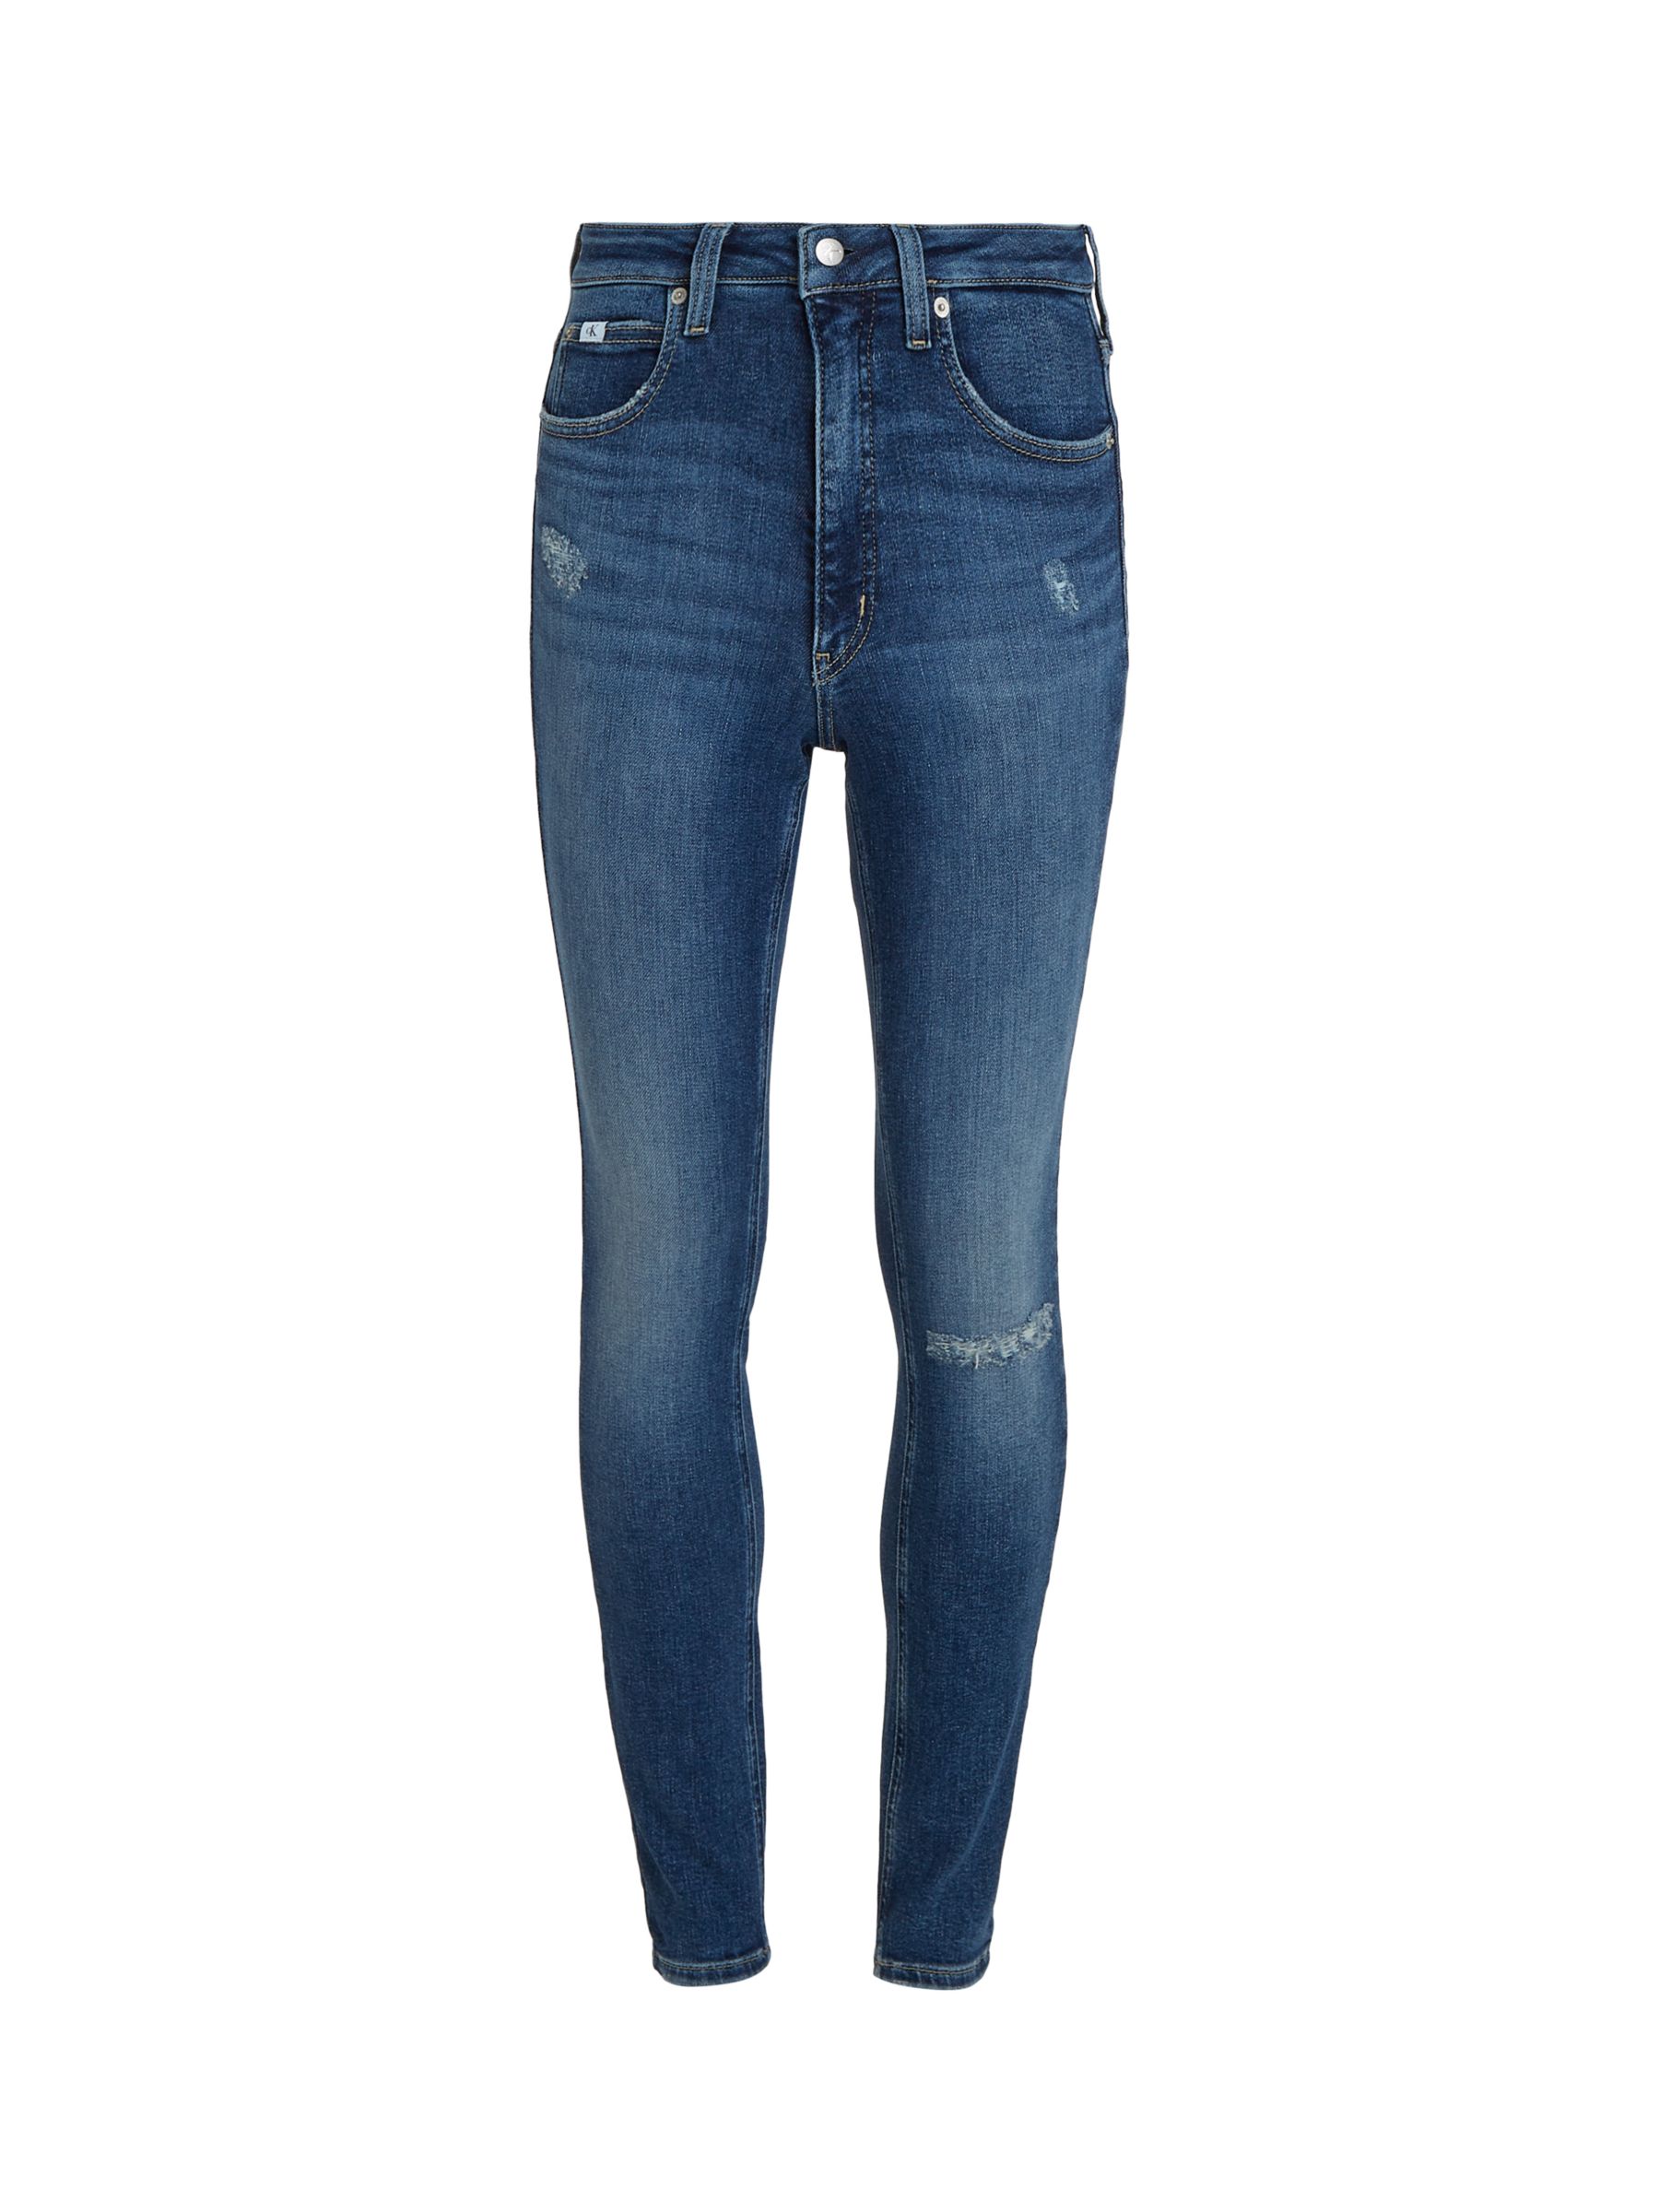 Calvin Klein Cotton Blend Skinny Jeans, Denim Dark, W25/L32